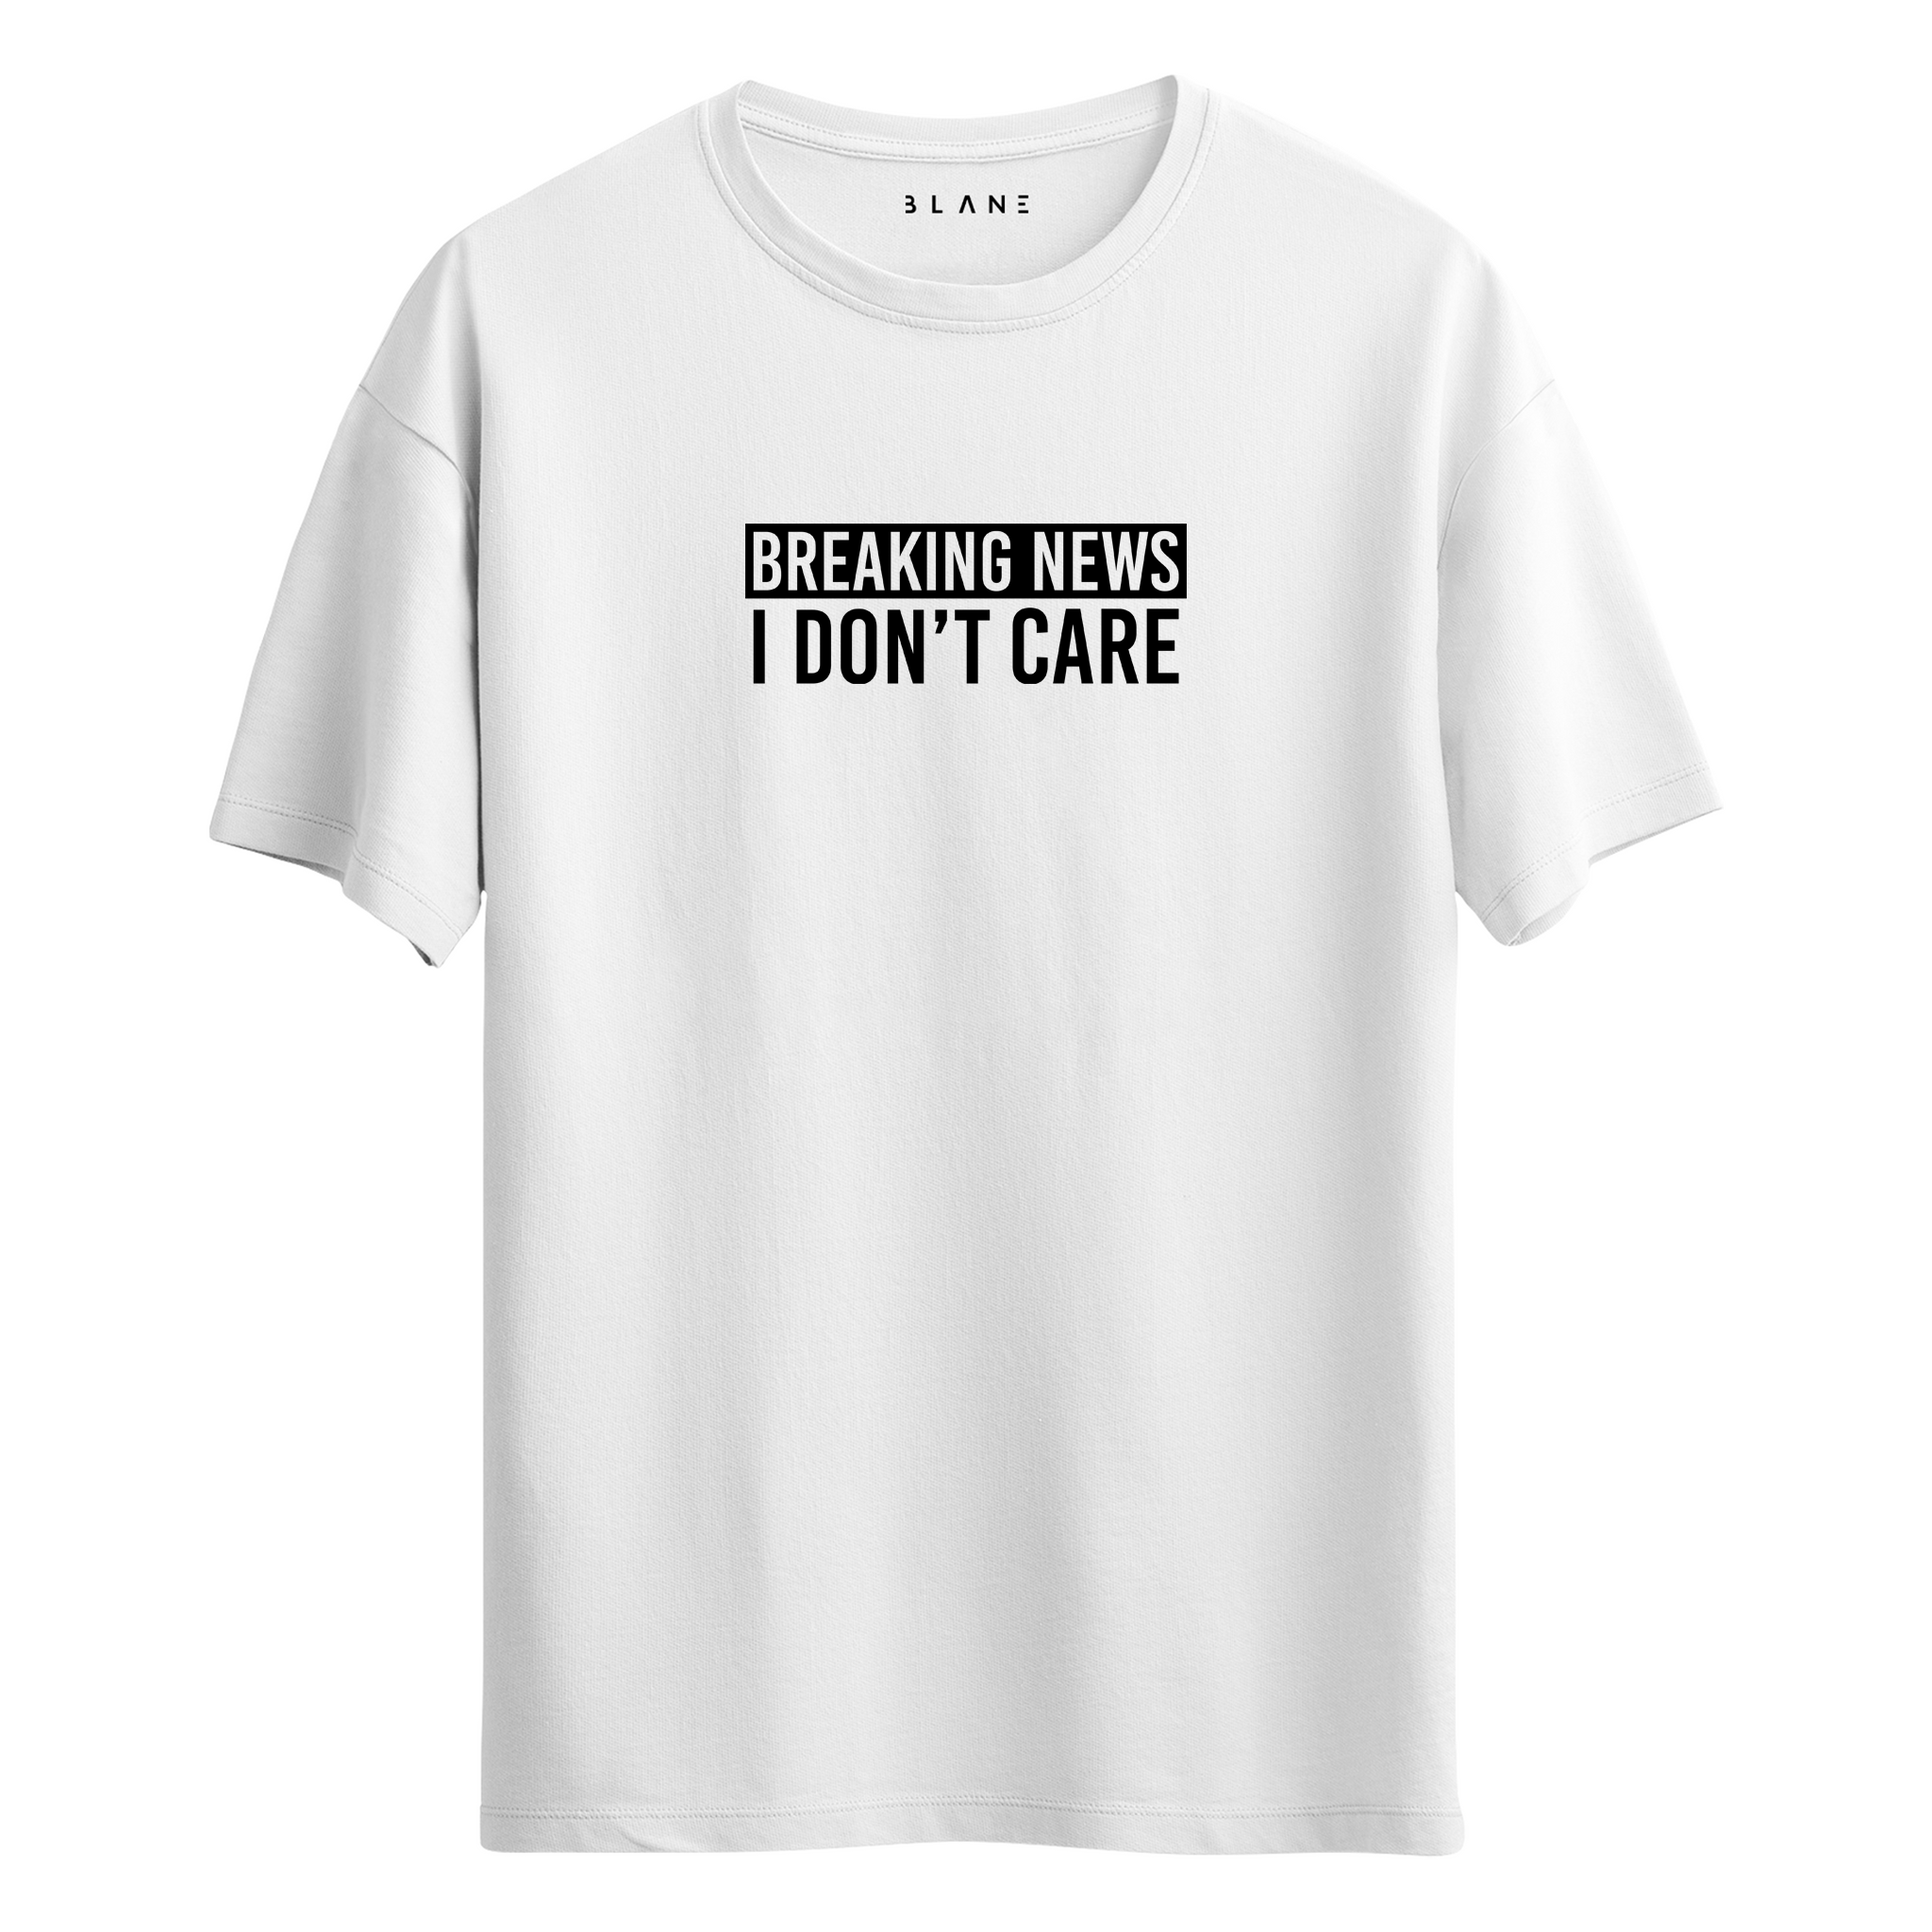 I DON'T CARE - T-Shirt